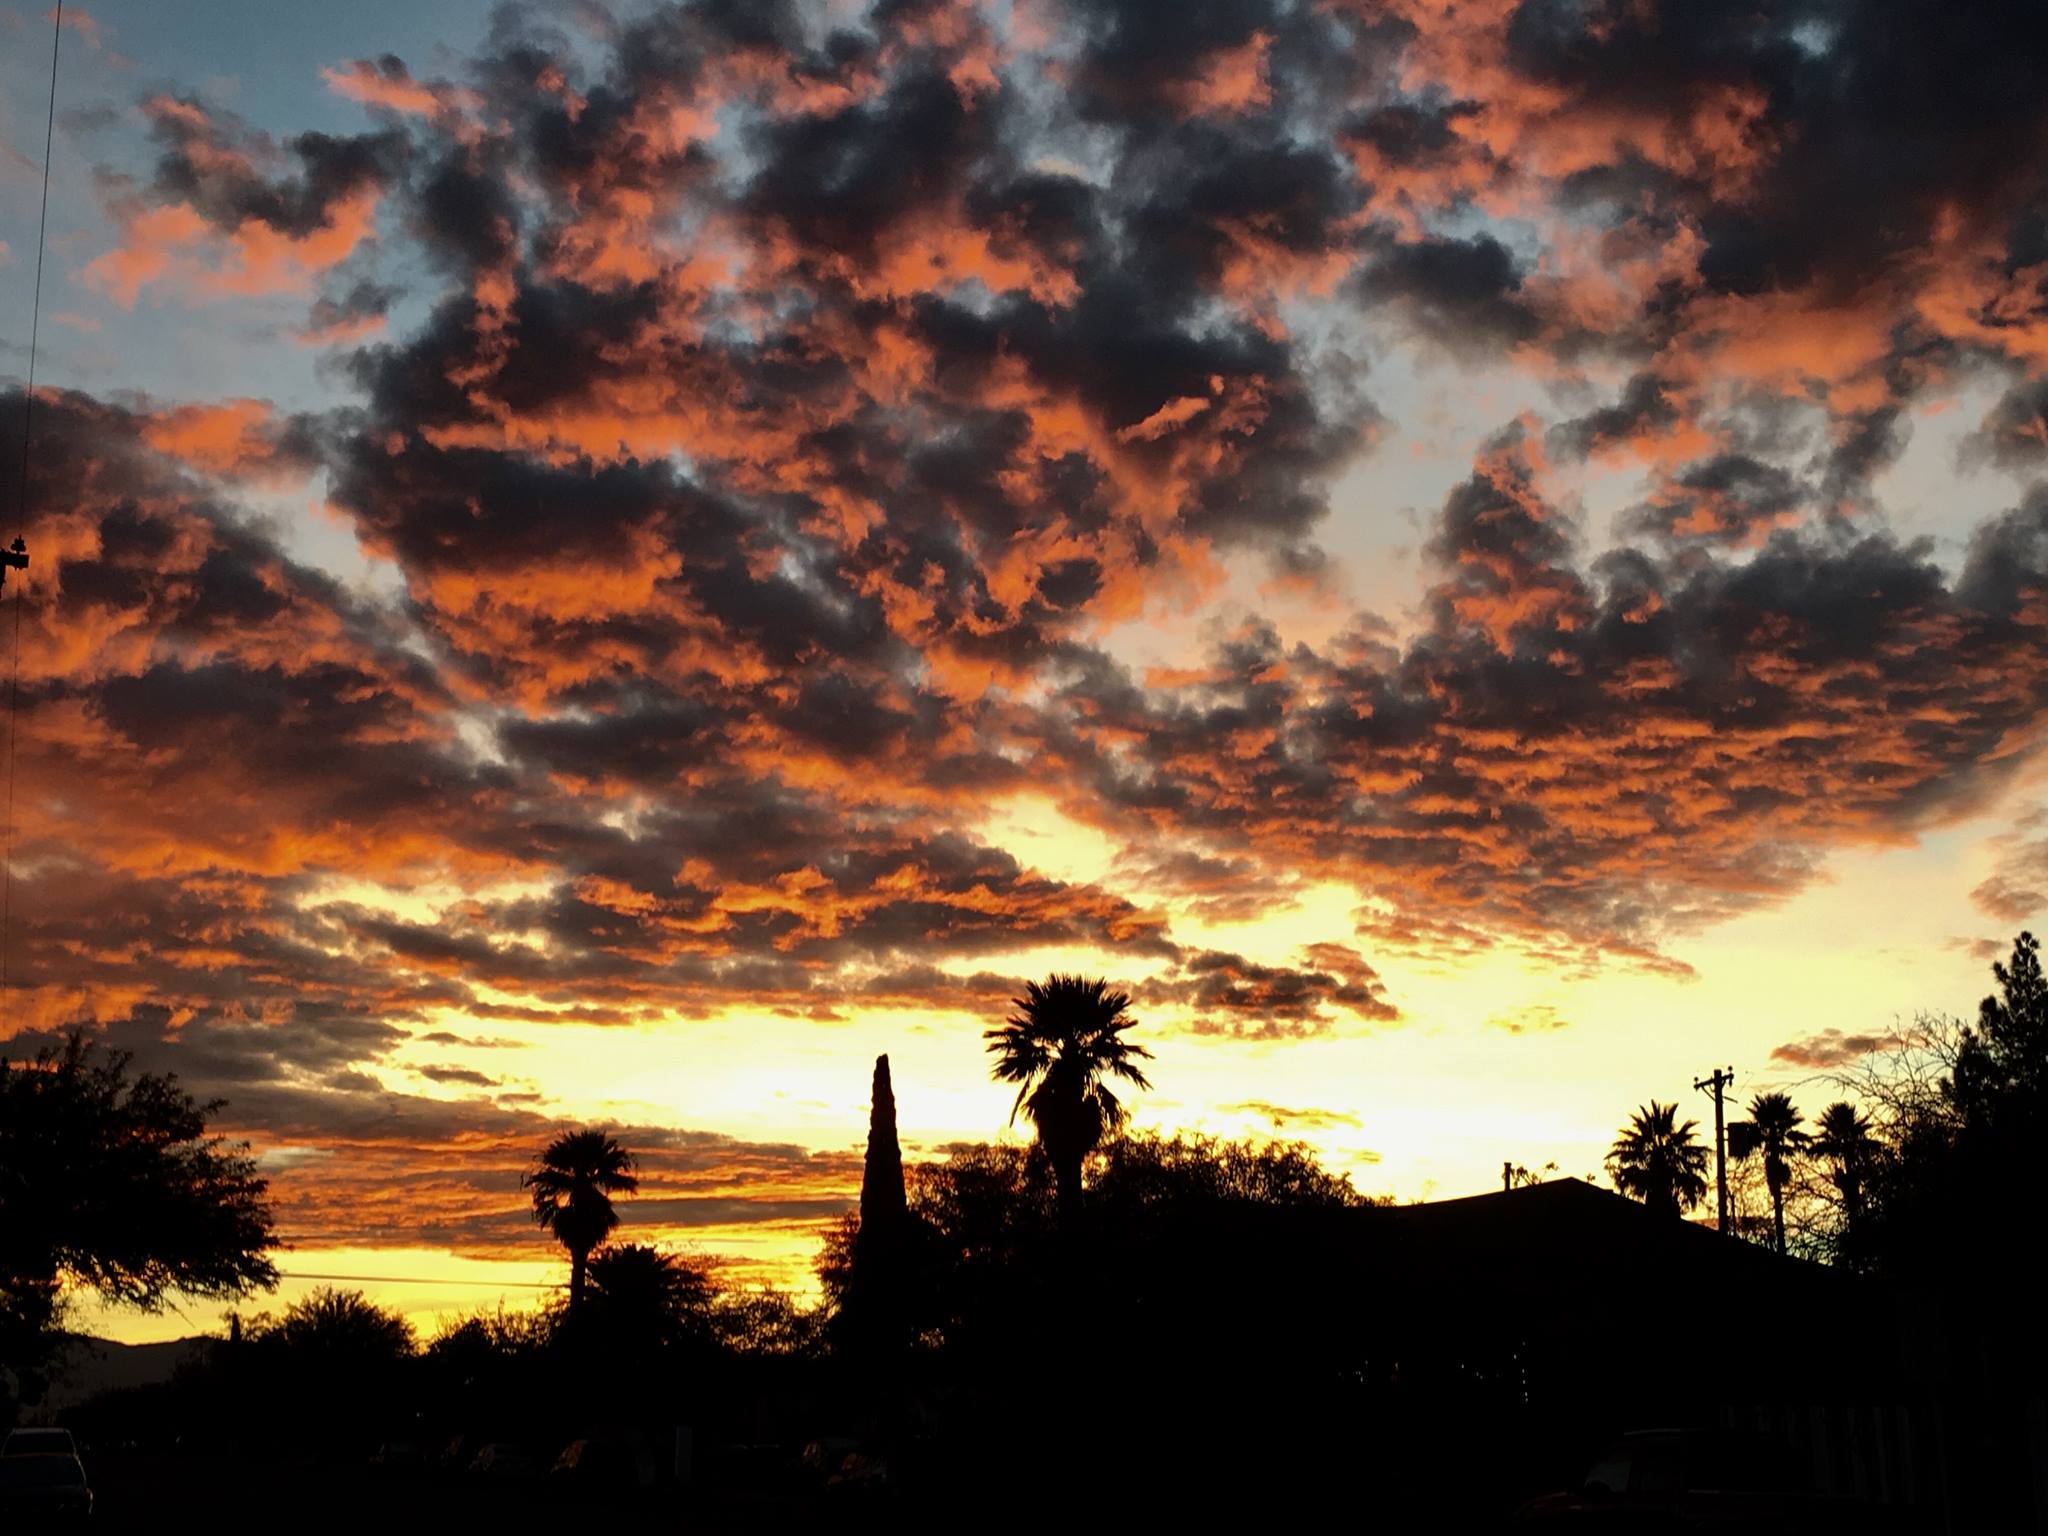 A recent Tucson sunrise! #nofilter